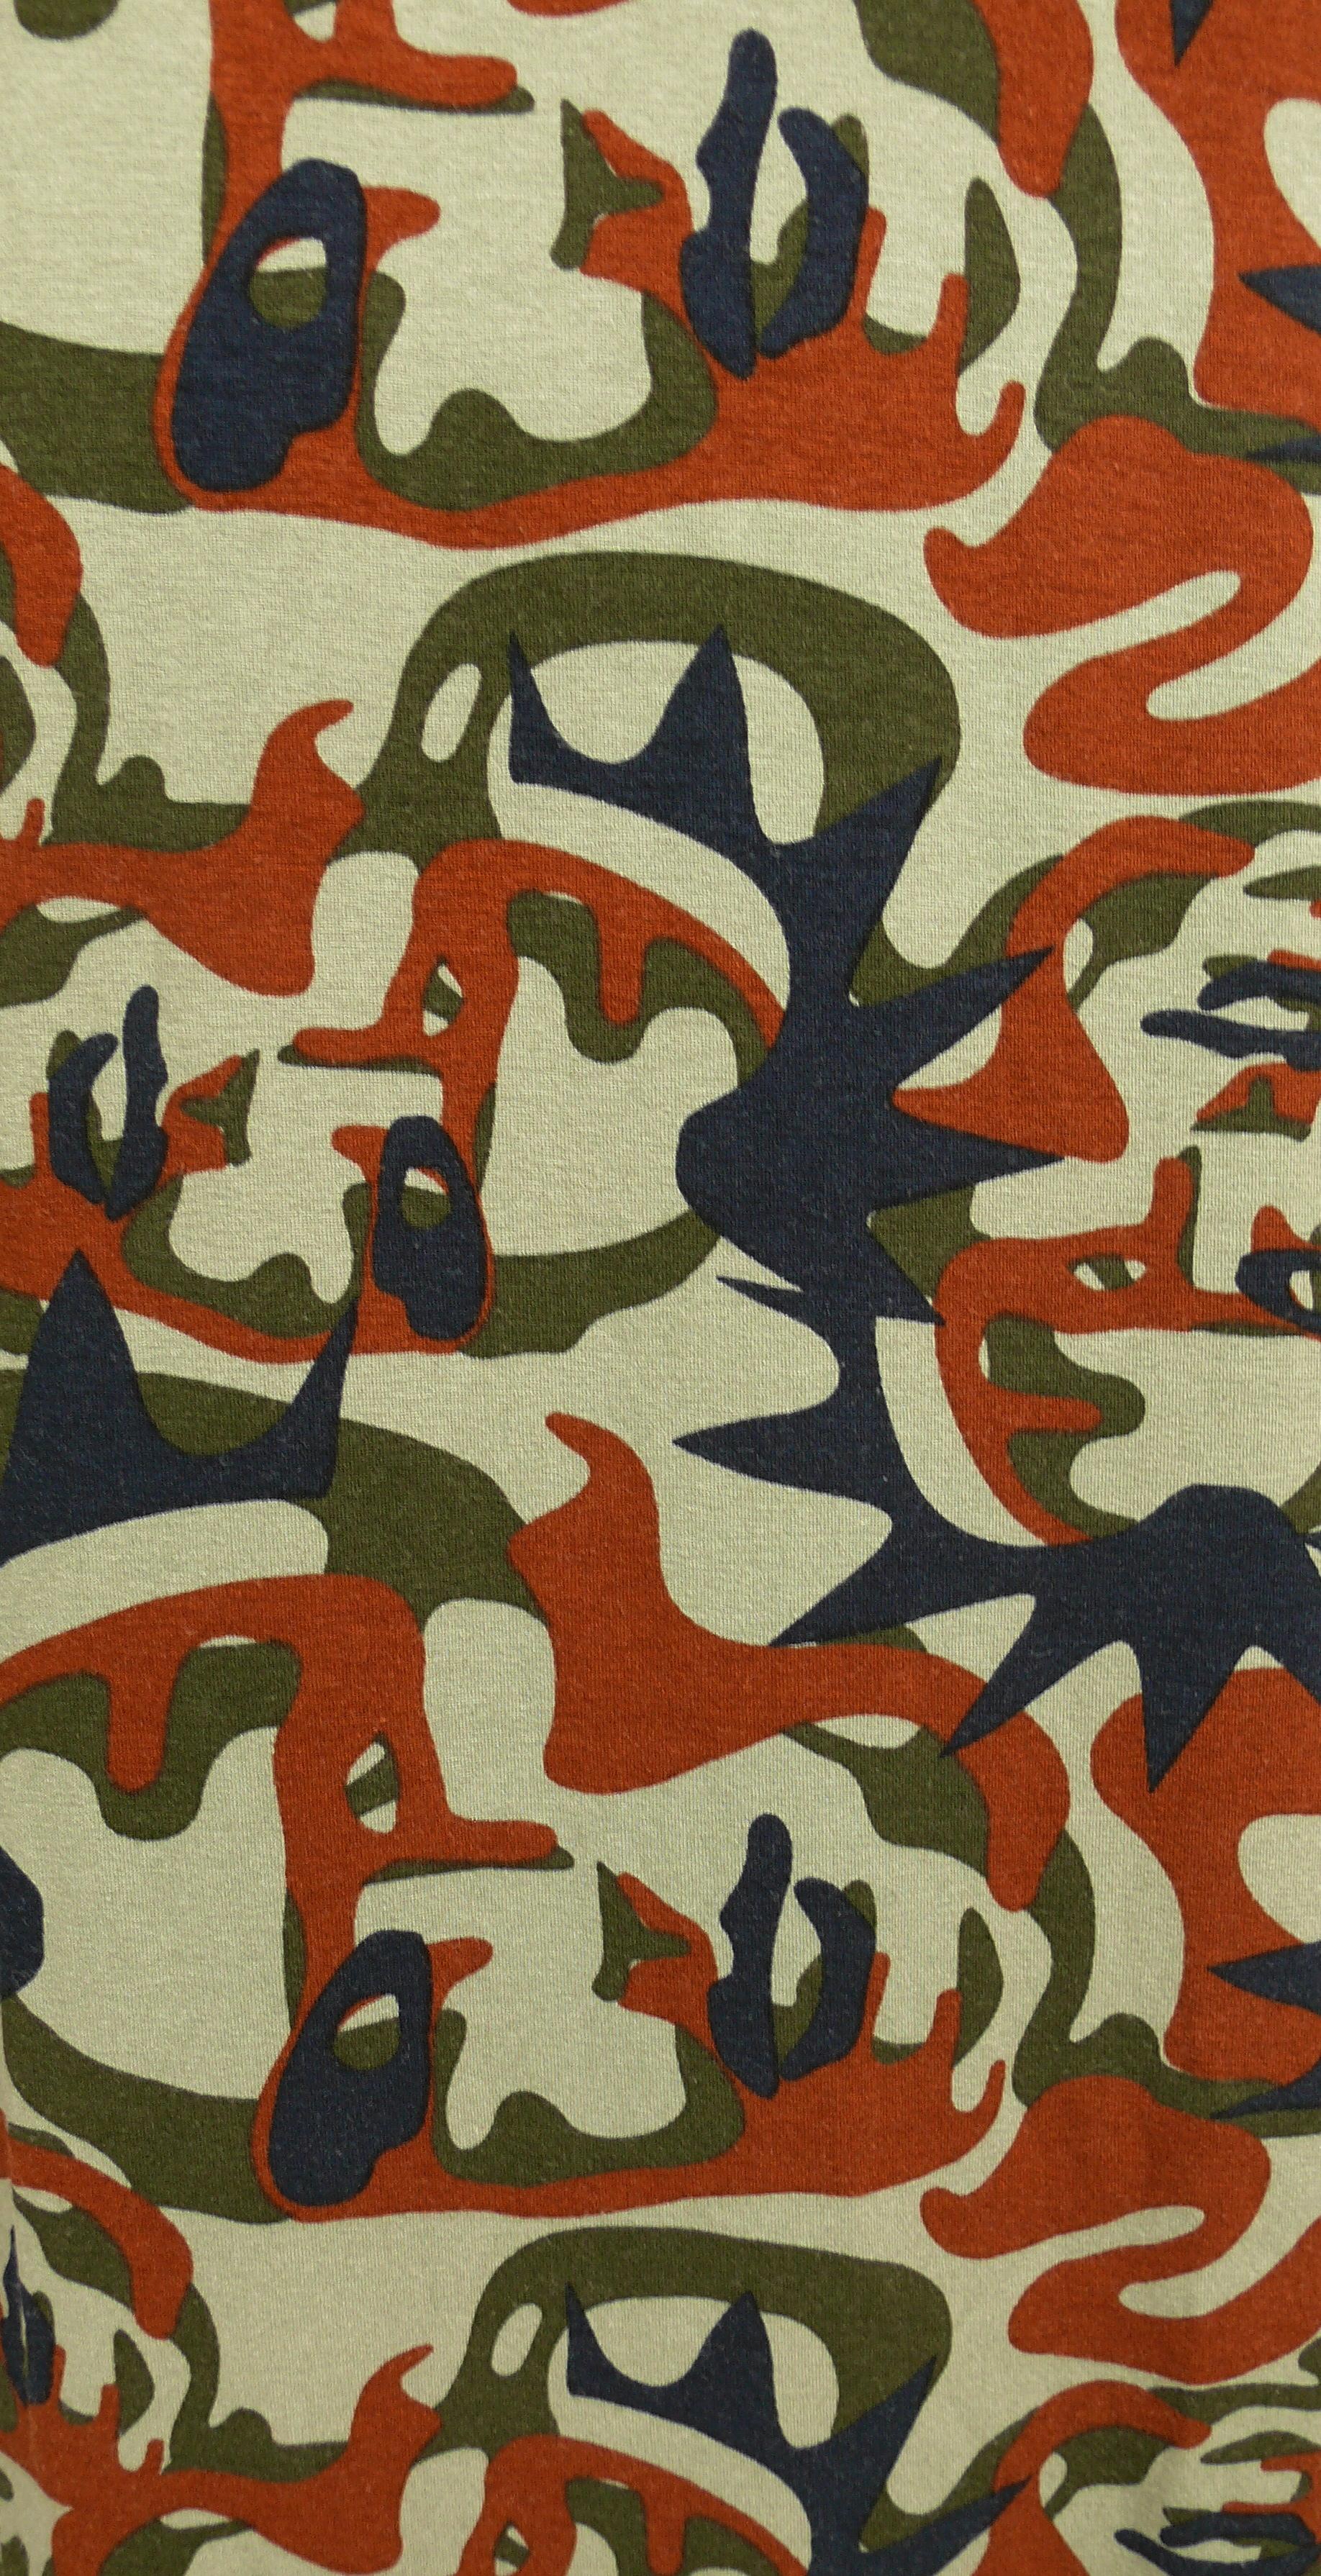 Black Jean Paul Gaultier Vintage Camouflage Faces Maxi Dress Size XL